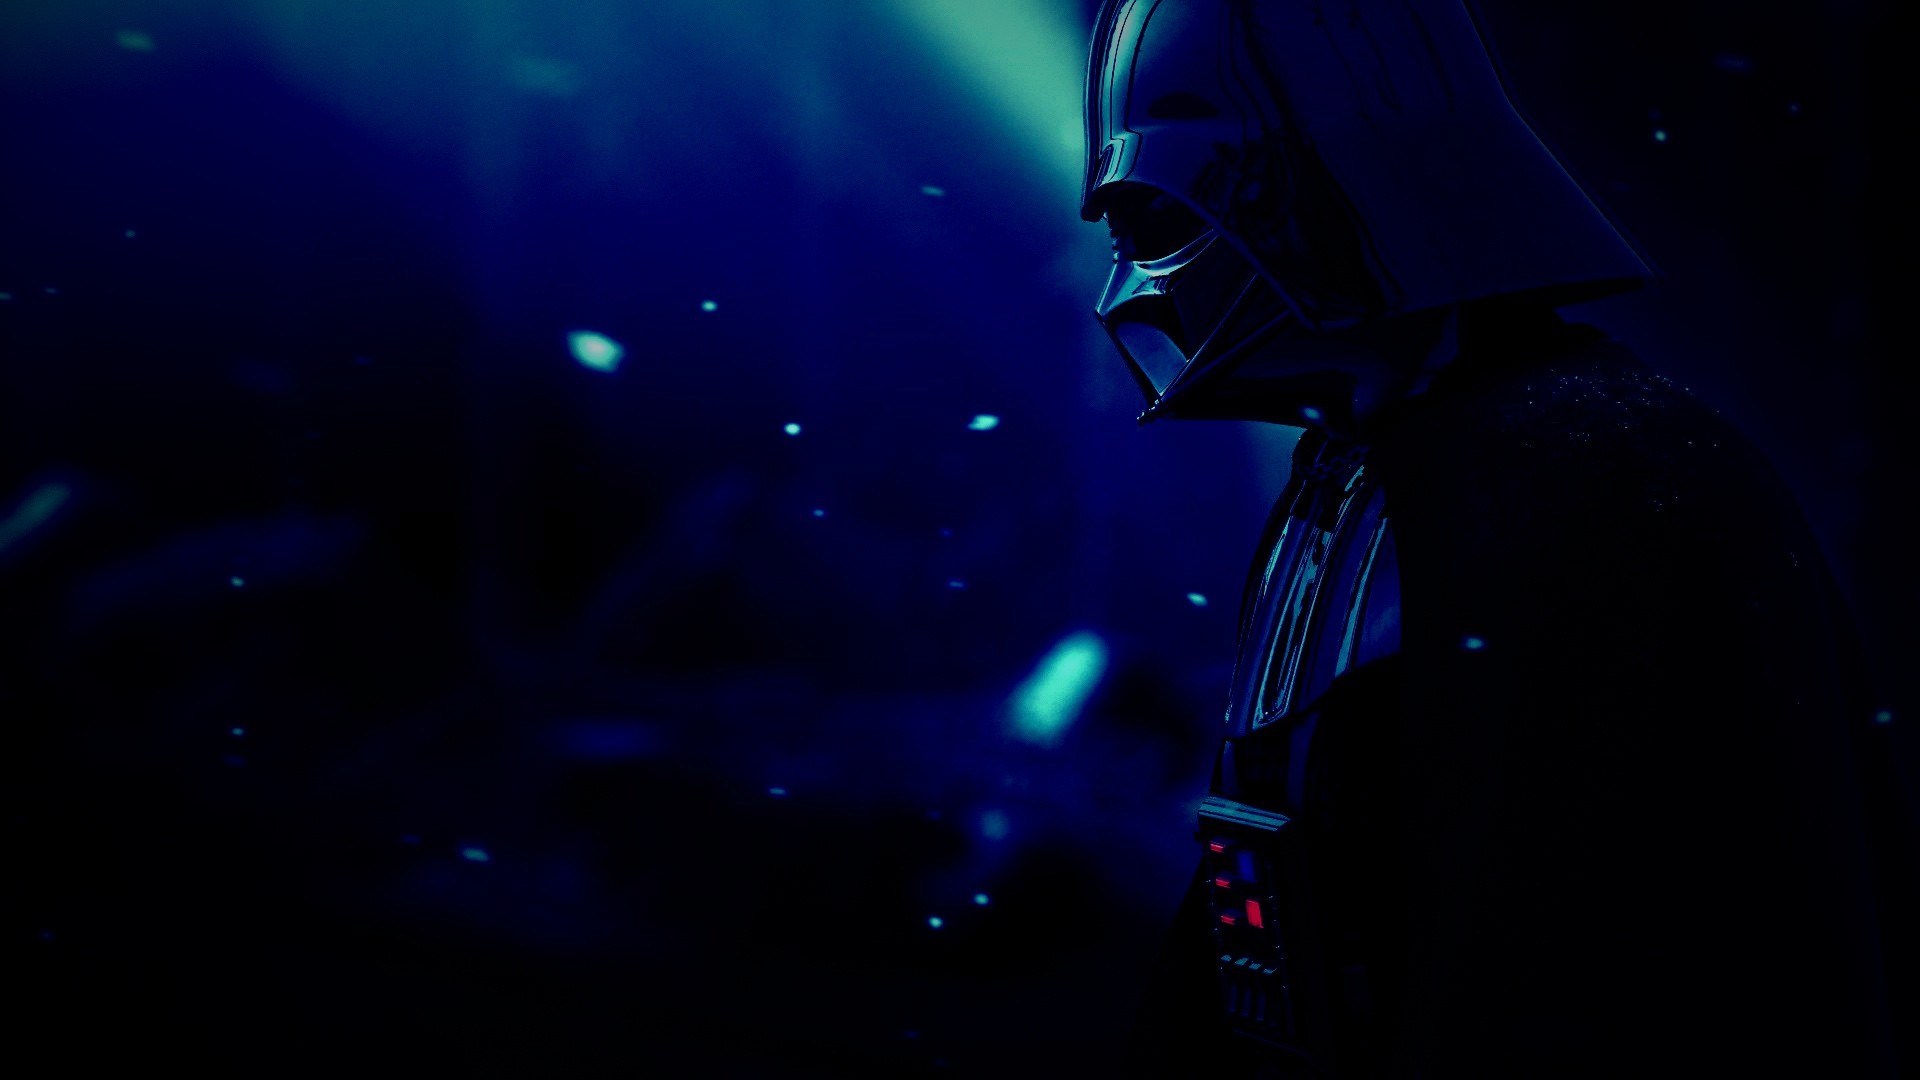 Pensive Darth Vader From Star Wars - Darth Vader Wallpaper Hd - HD Wallpaper 